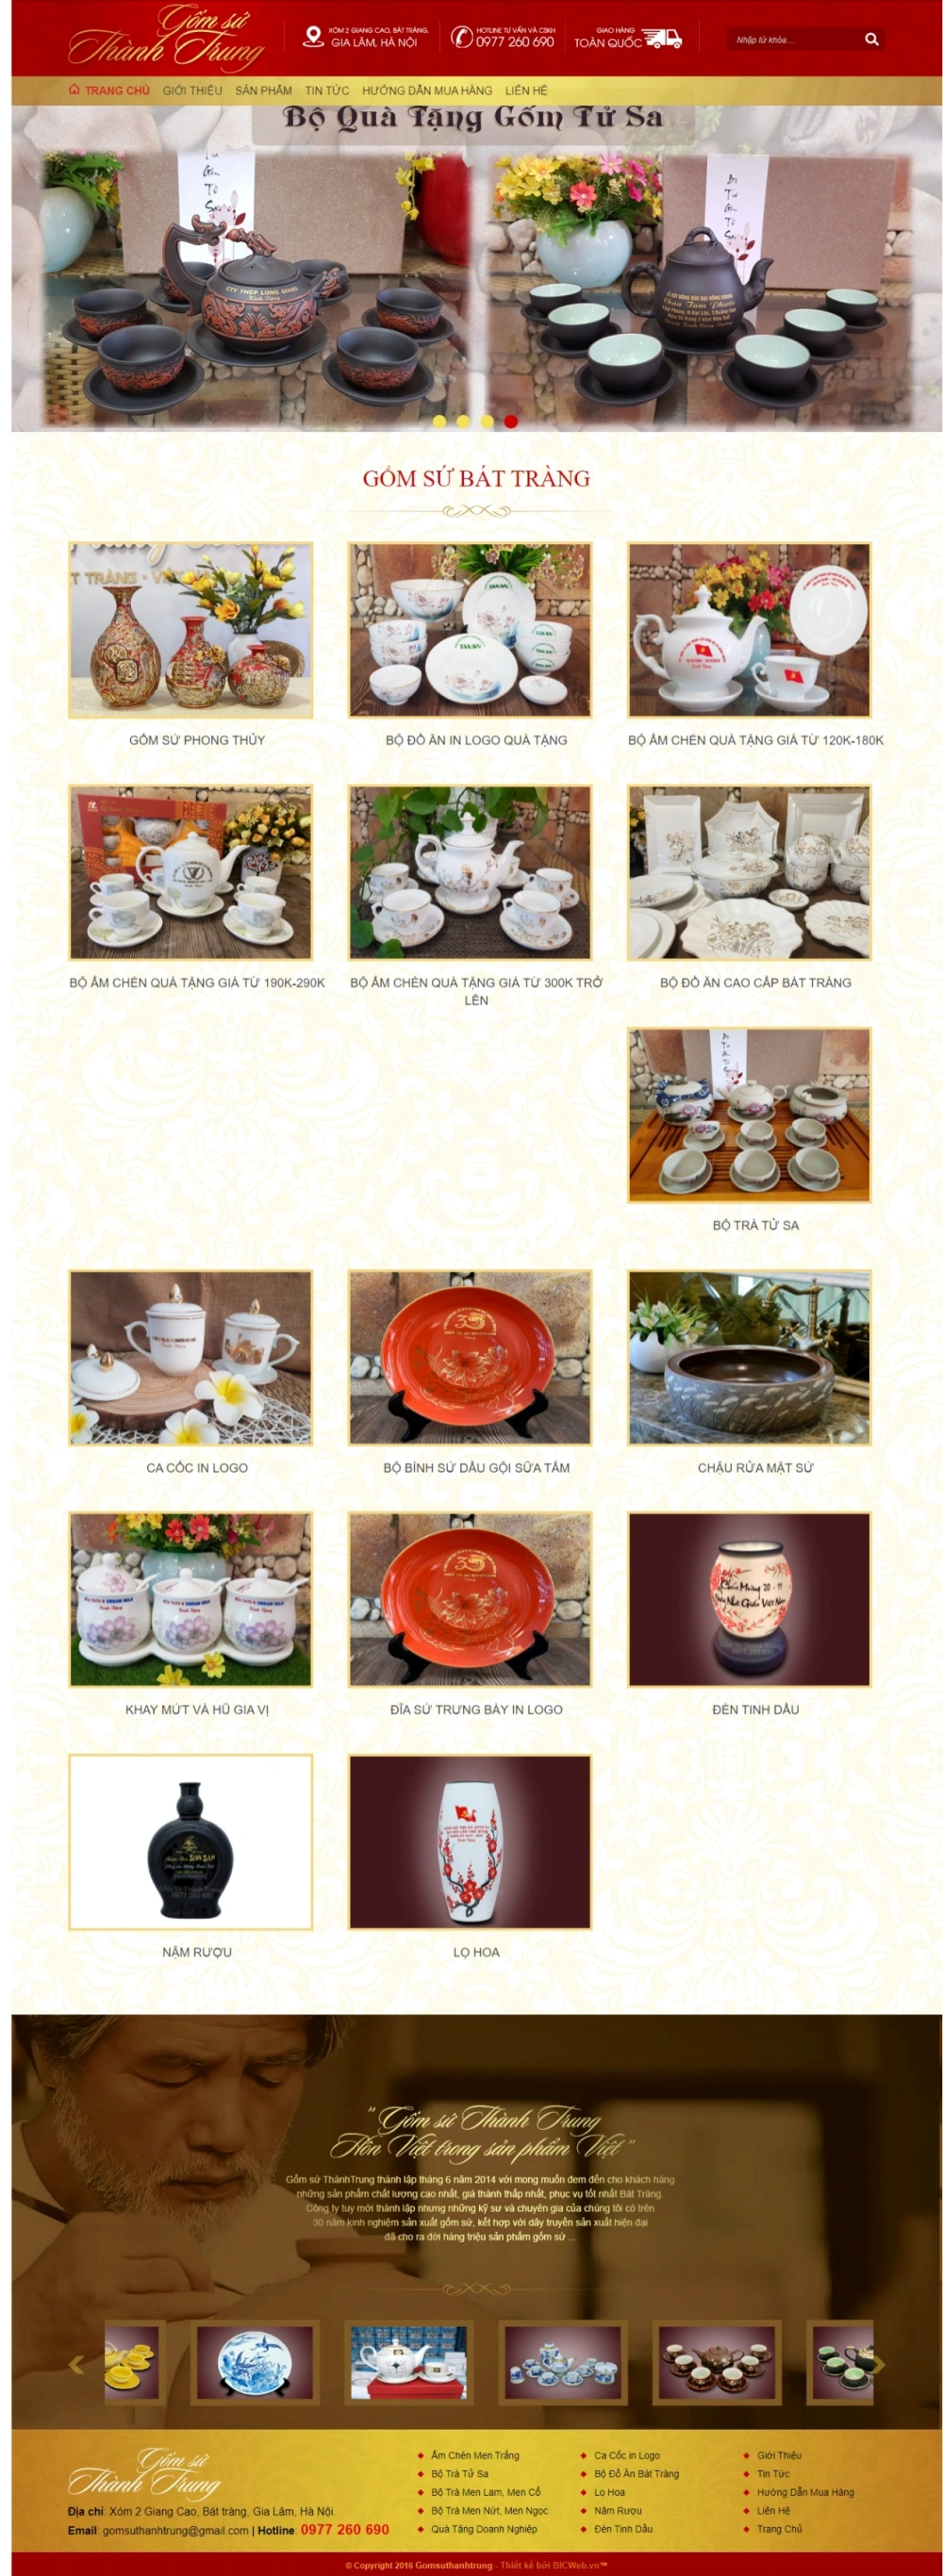 Web bán hàng gốm sứ Thành Trung